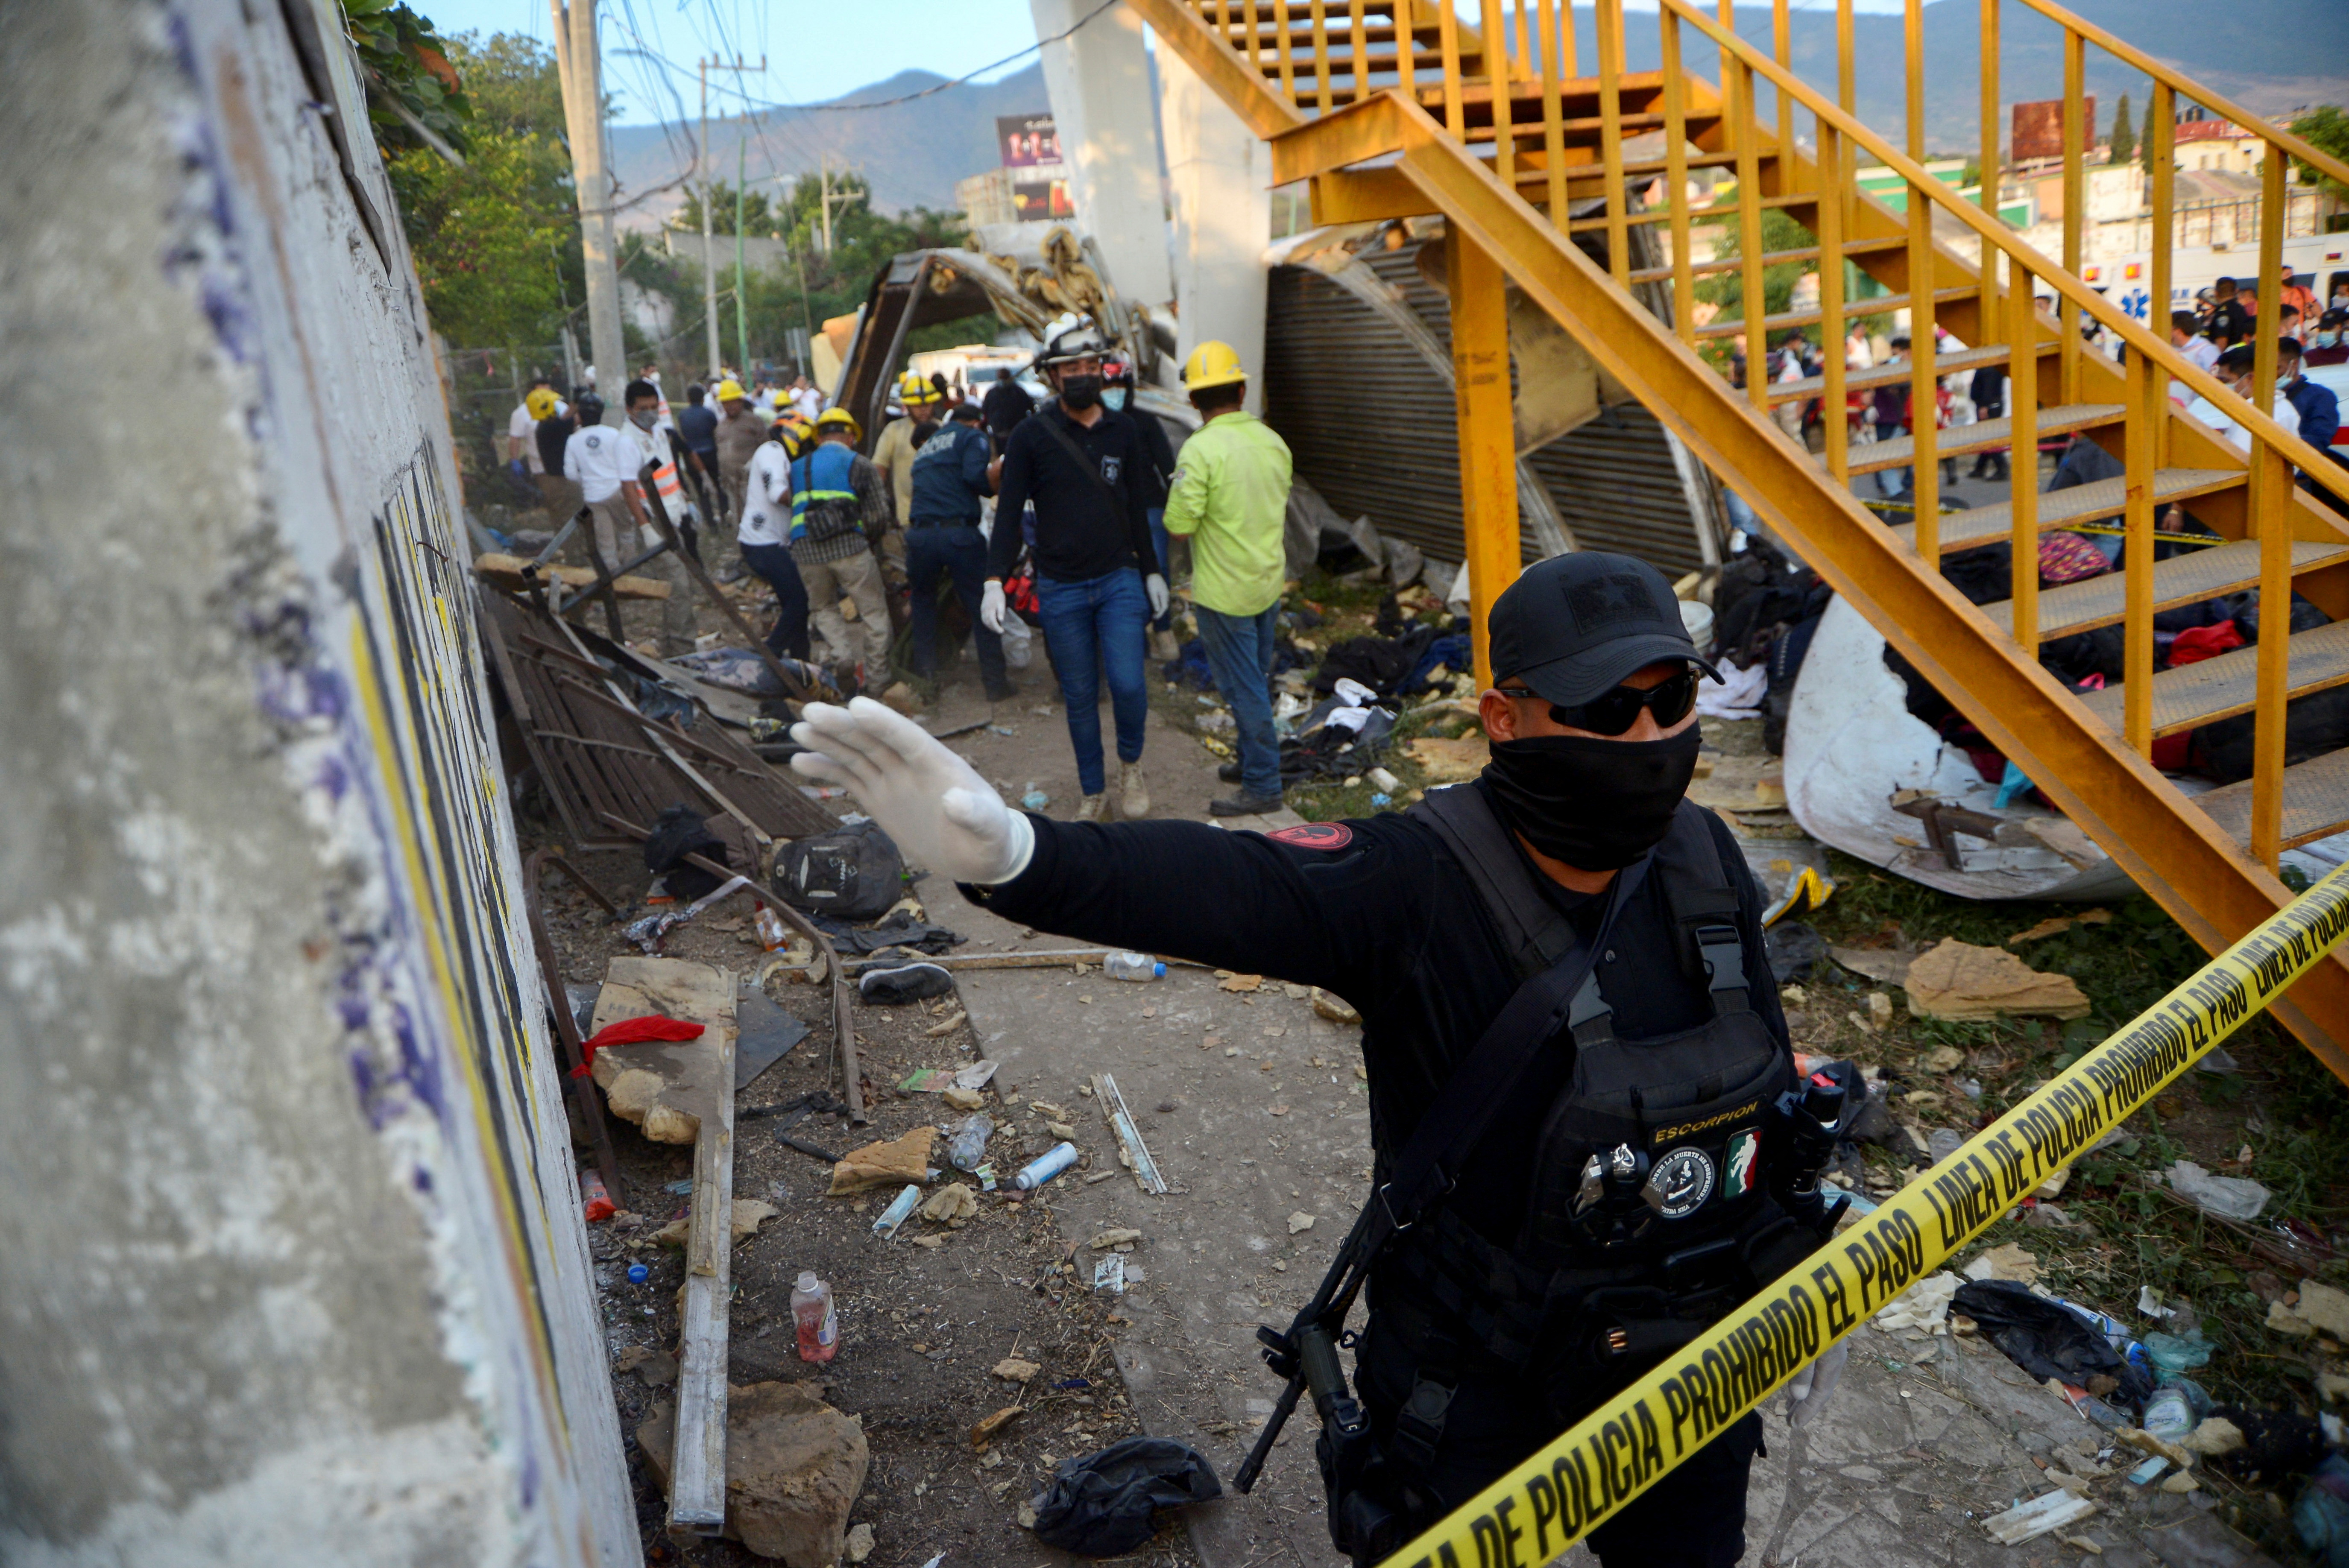 El gobernador del estado instruyó a las autoridades a colaborar en el rescate (Foto: REUTERS/Jacob Garcia)